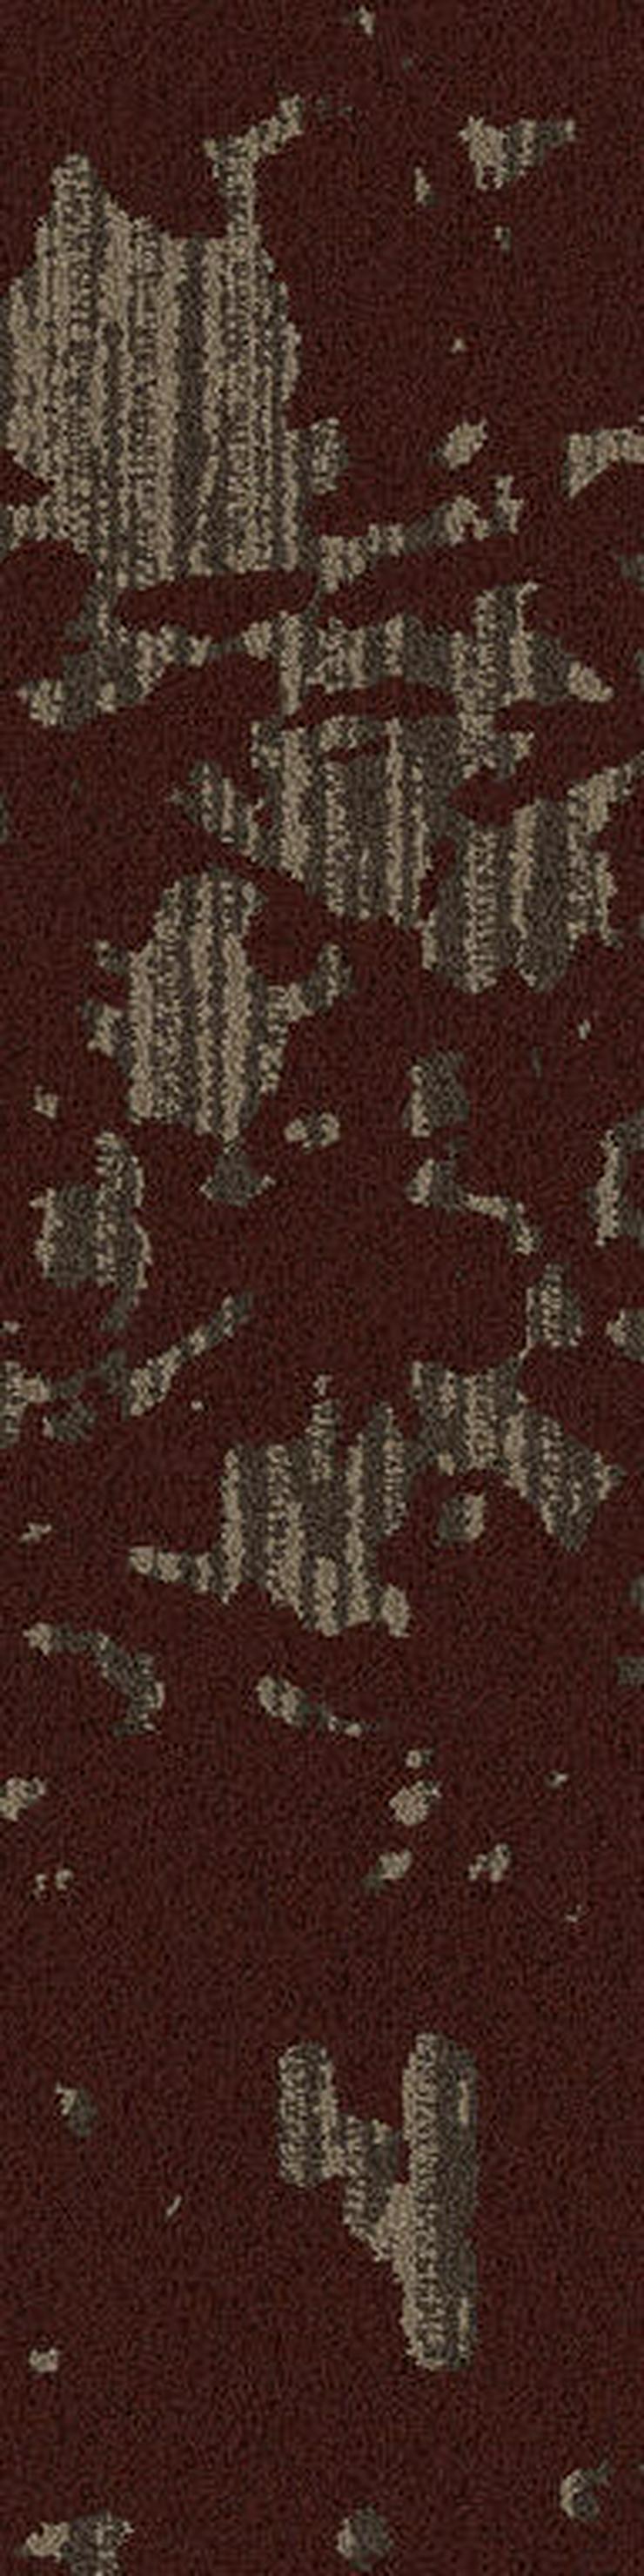 Global Change Serie 25 x 100cm Shading Fawn Teppichfliesen - Teppiche - Bild 5